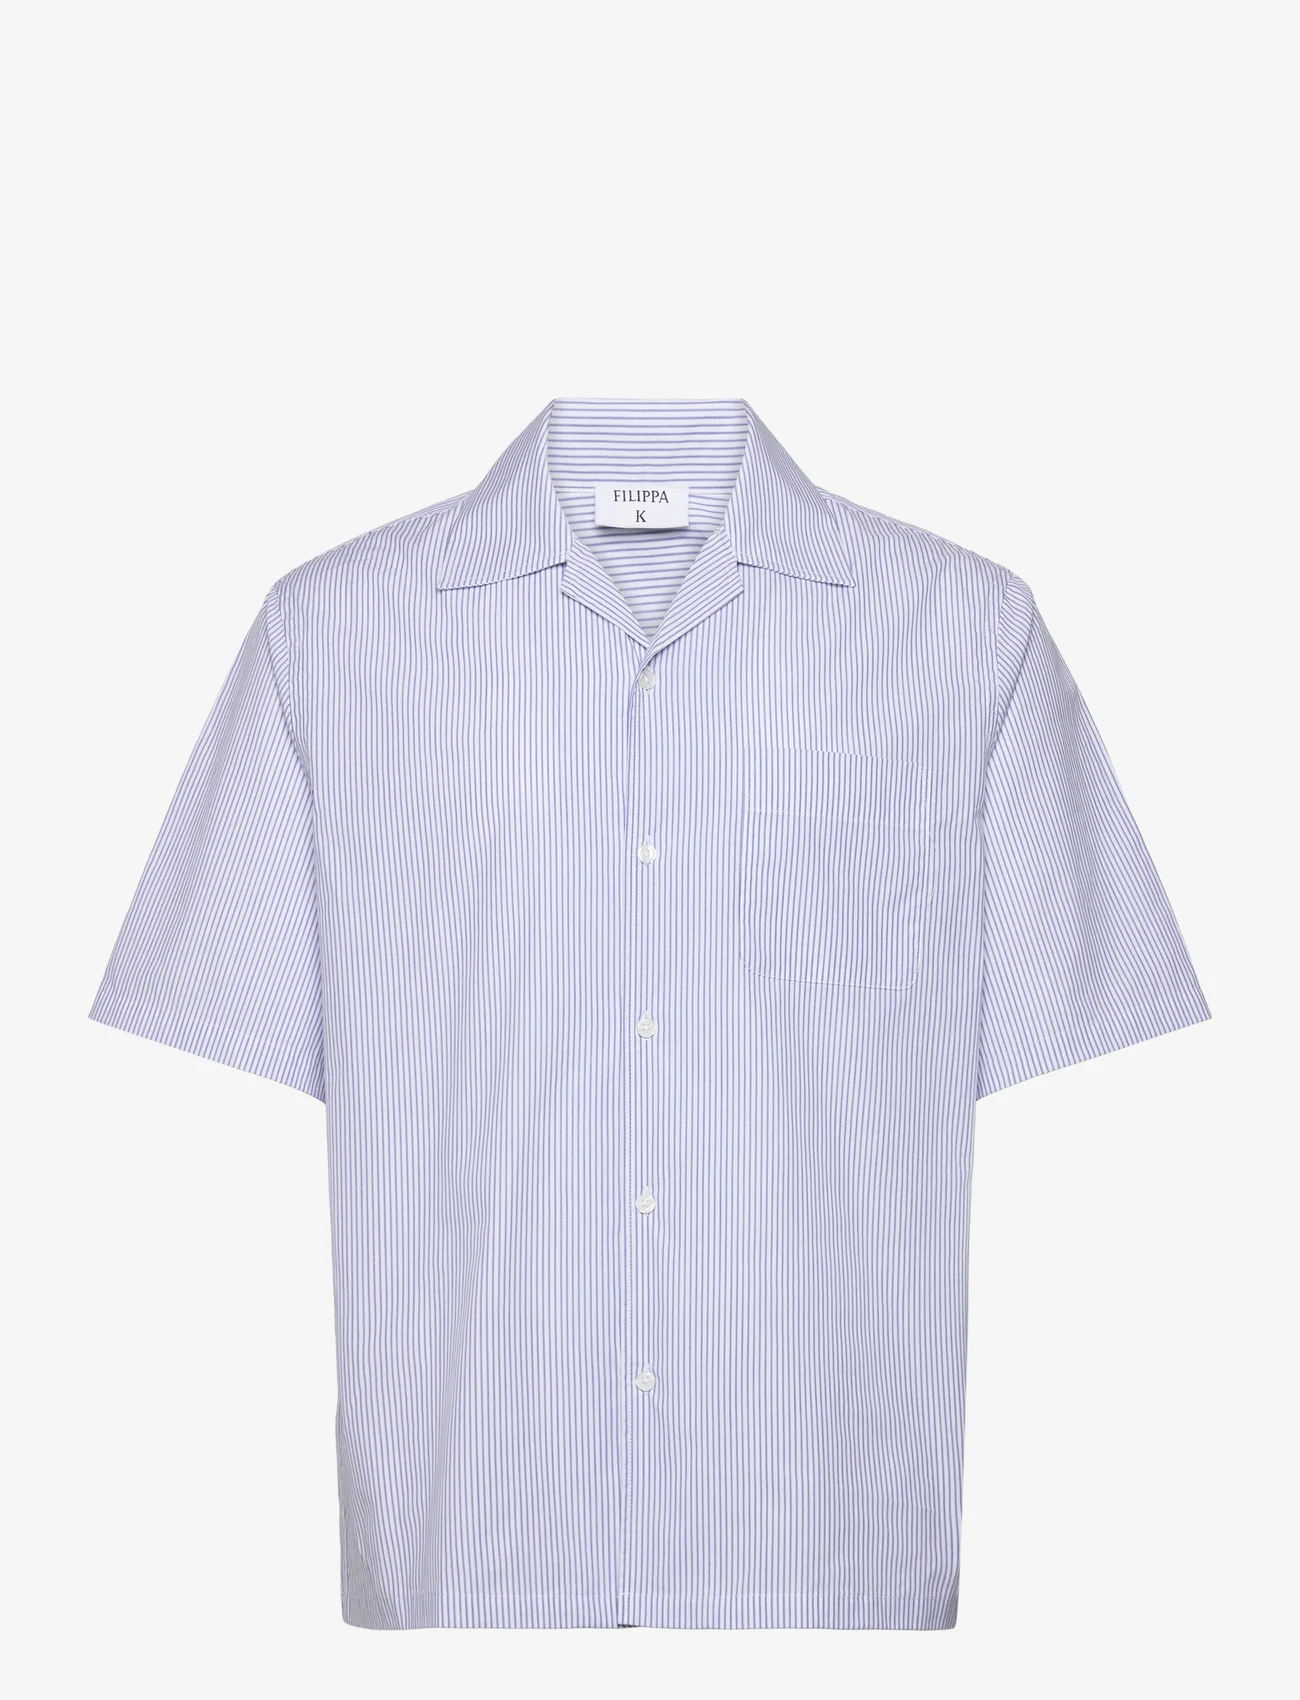 Filippa K - Striped Short Sleeve Shirt - podstawowe koszulki - blue strip - 0